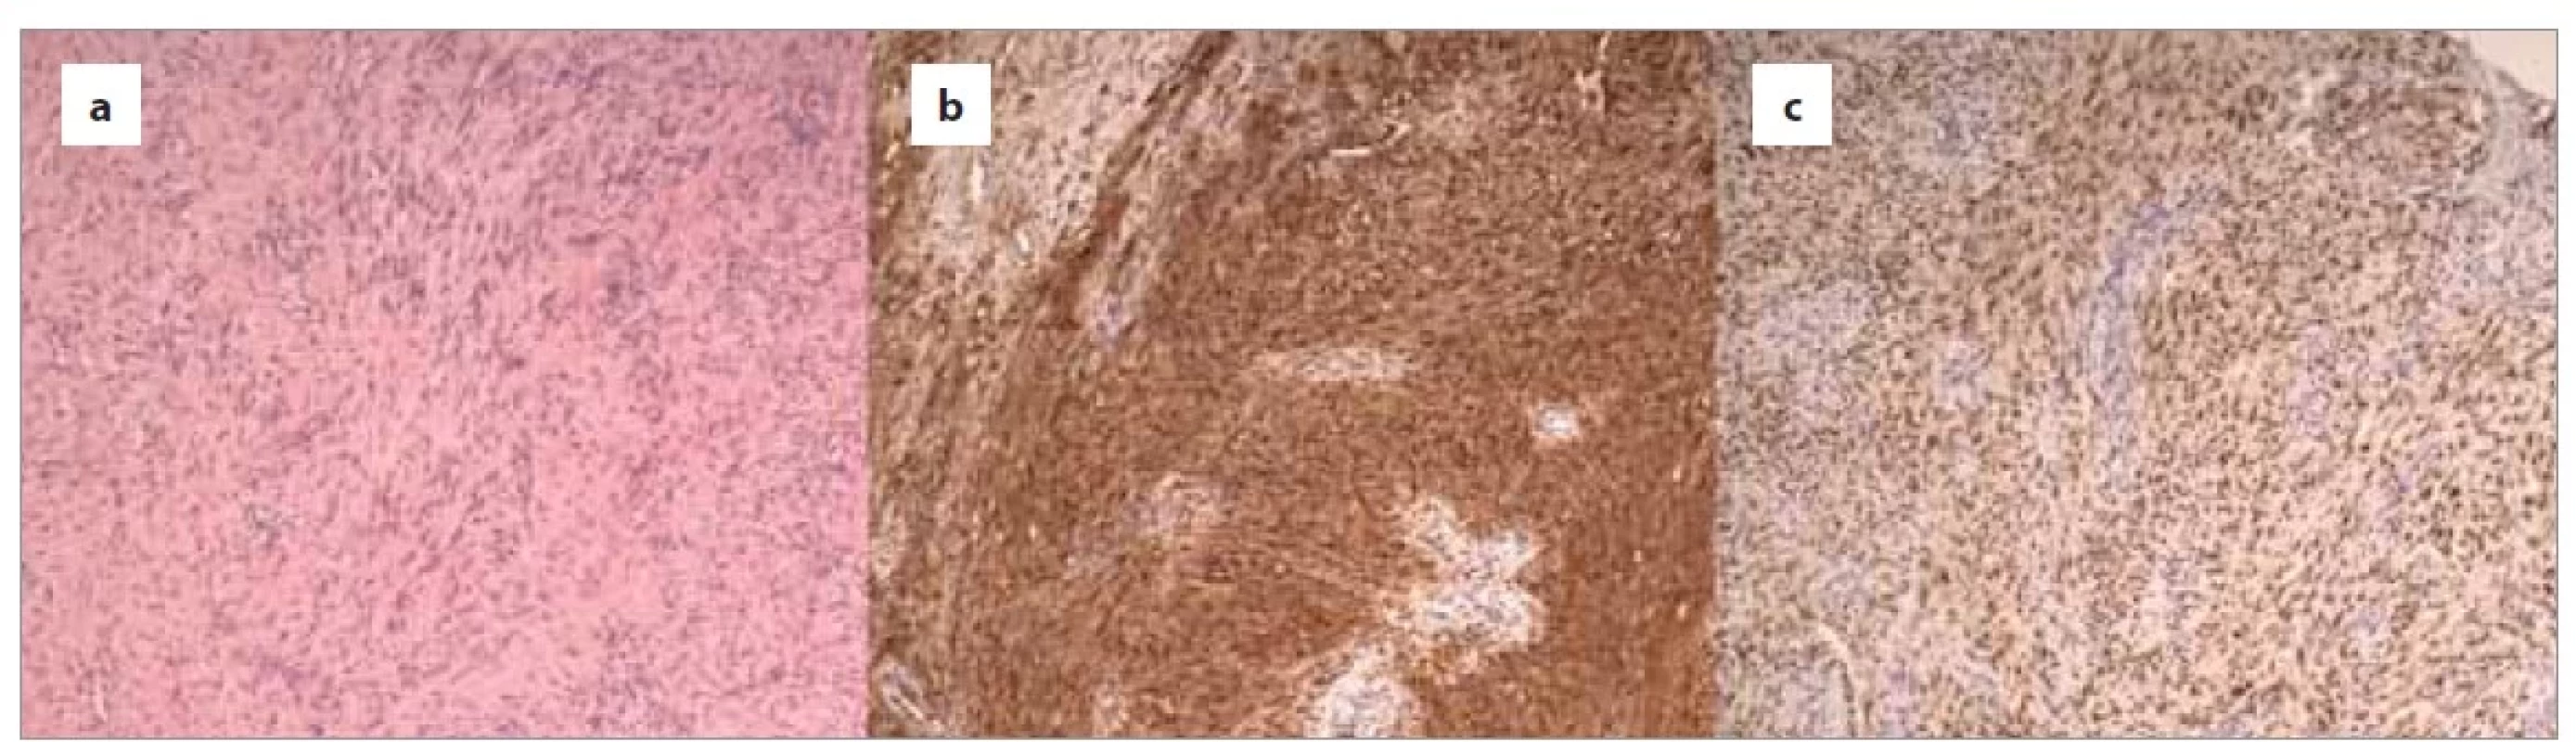 Histologie schwanomu:<br>
a) buněčný vřetenobuněčný tumor s fascikulární morfologii, hematoxylin eozin, 100×;<br>
b) difuzní silná pozitivita proteinu S100, imunohistochemie S100, 100×;<br>
c) difuzní silná pozitivita v SOX0, imunohistochemie SOX10, 100×.<br>
Fig. 4. Histology of schwannoma:<br>
a) cellular spindle tumor with fascicular morphology, hematoxylin eosin, 100×;<br>
b) diffuse strong positivity of protein S100, immunohistochemistry S100, 100×;<br>
c) diffuse strong positivity of SOX0, immunohistochemistry SOX10, 100×.